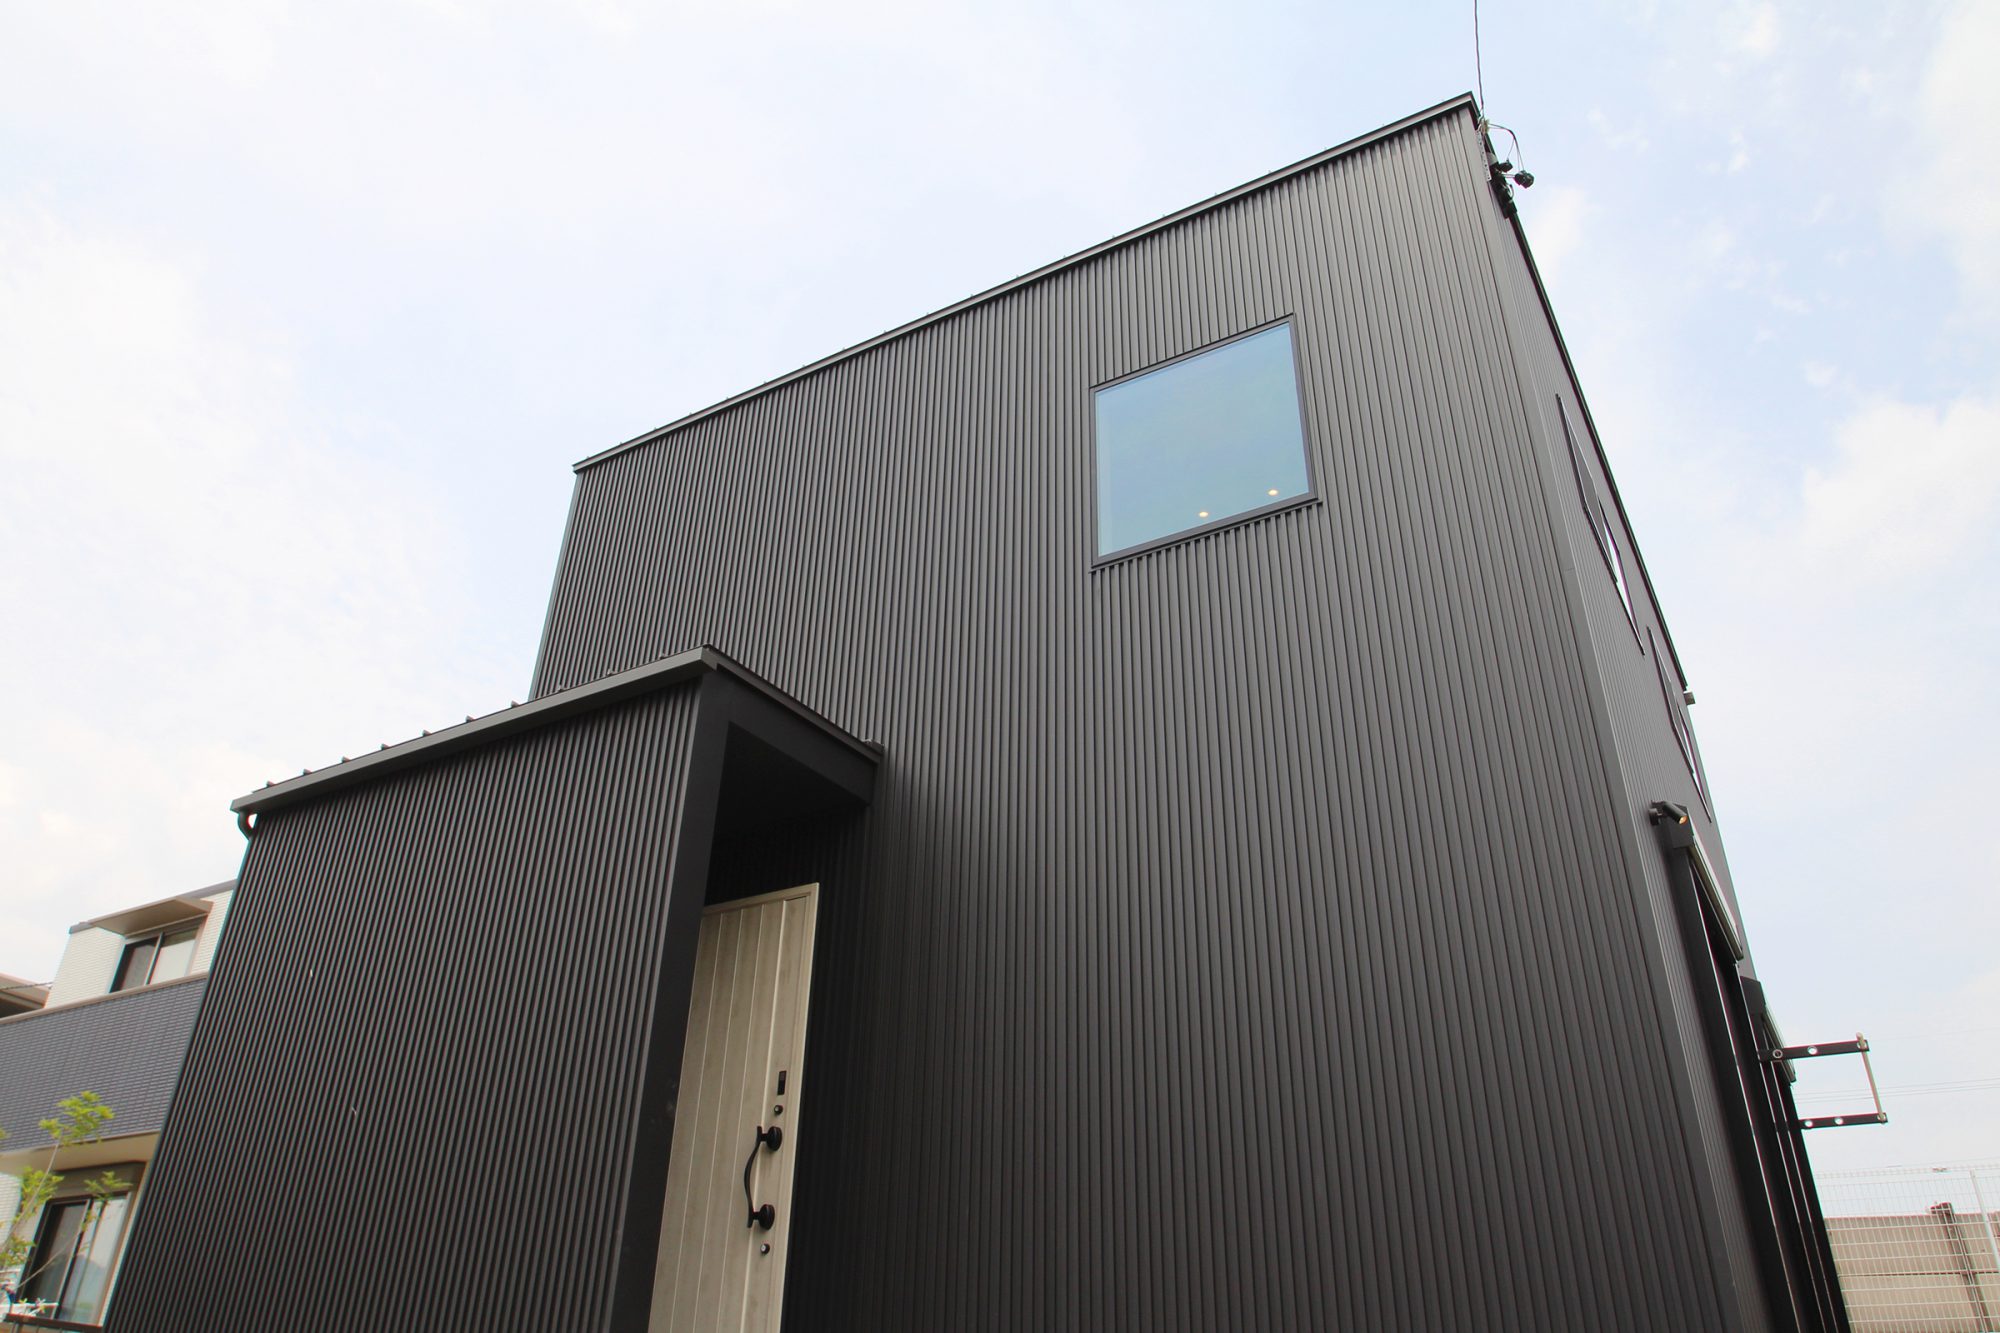 ツートンカラーのガルバリウム鋼板のお家 注文住宅施工事例からお家の第一印象を紹介